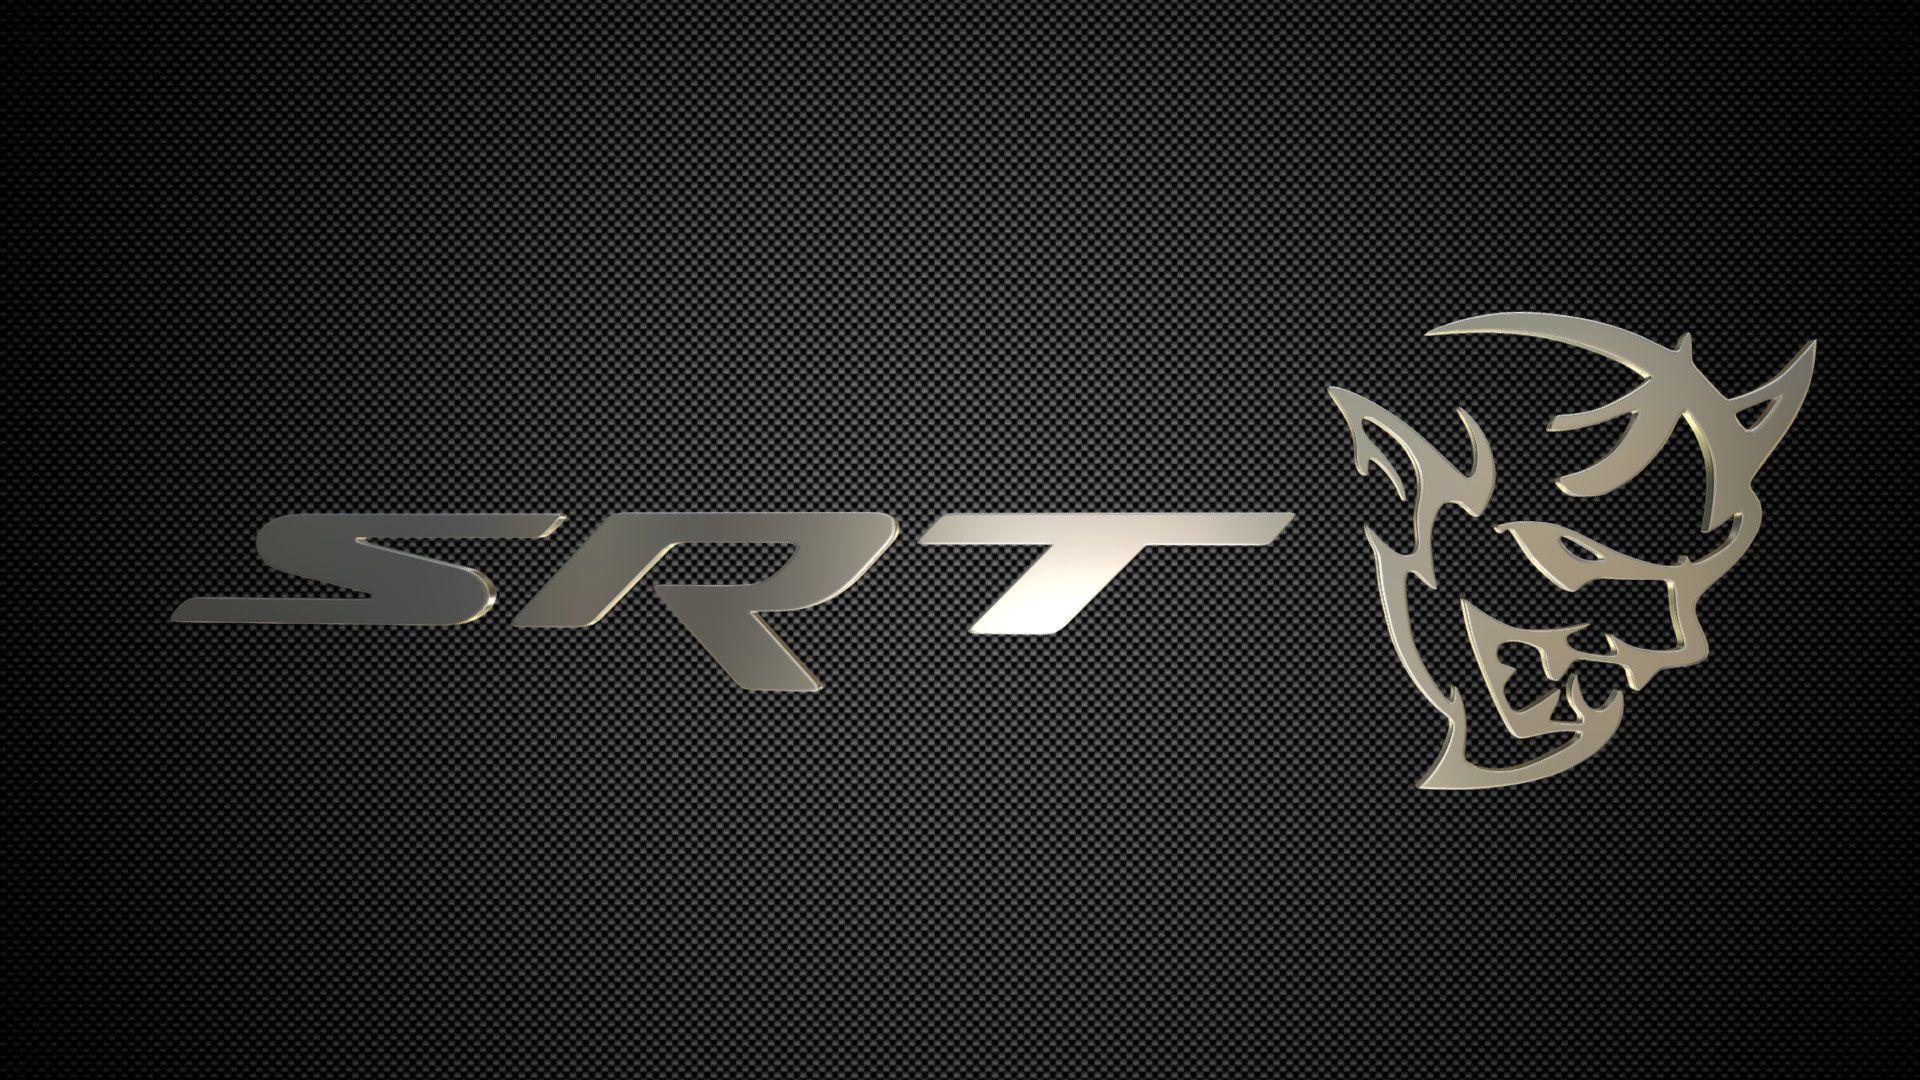 SRT Logo - Dodge Challenger SRT Demon logoD model